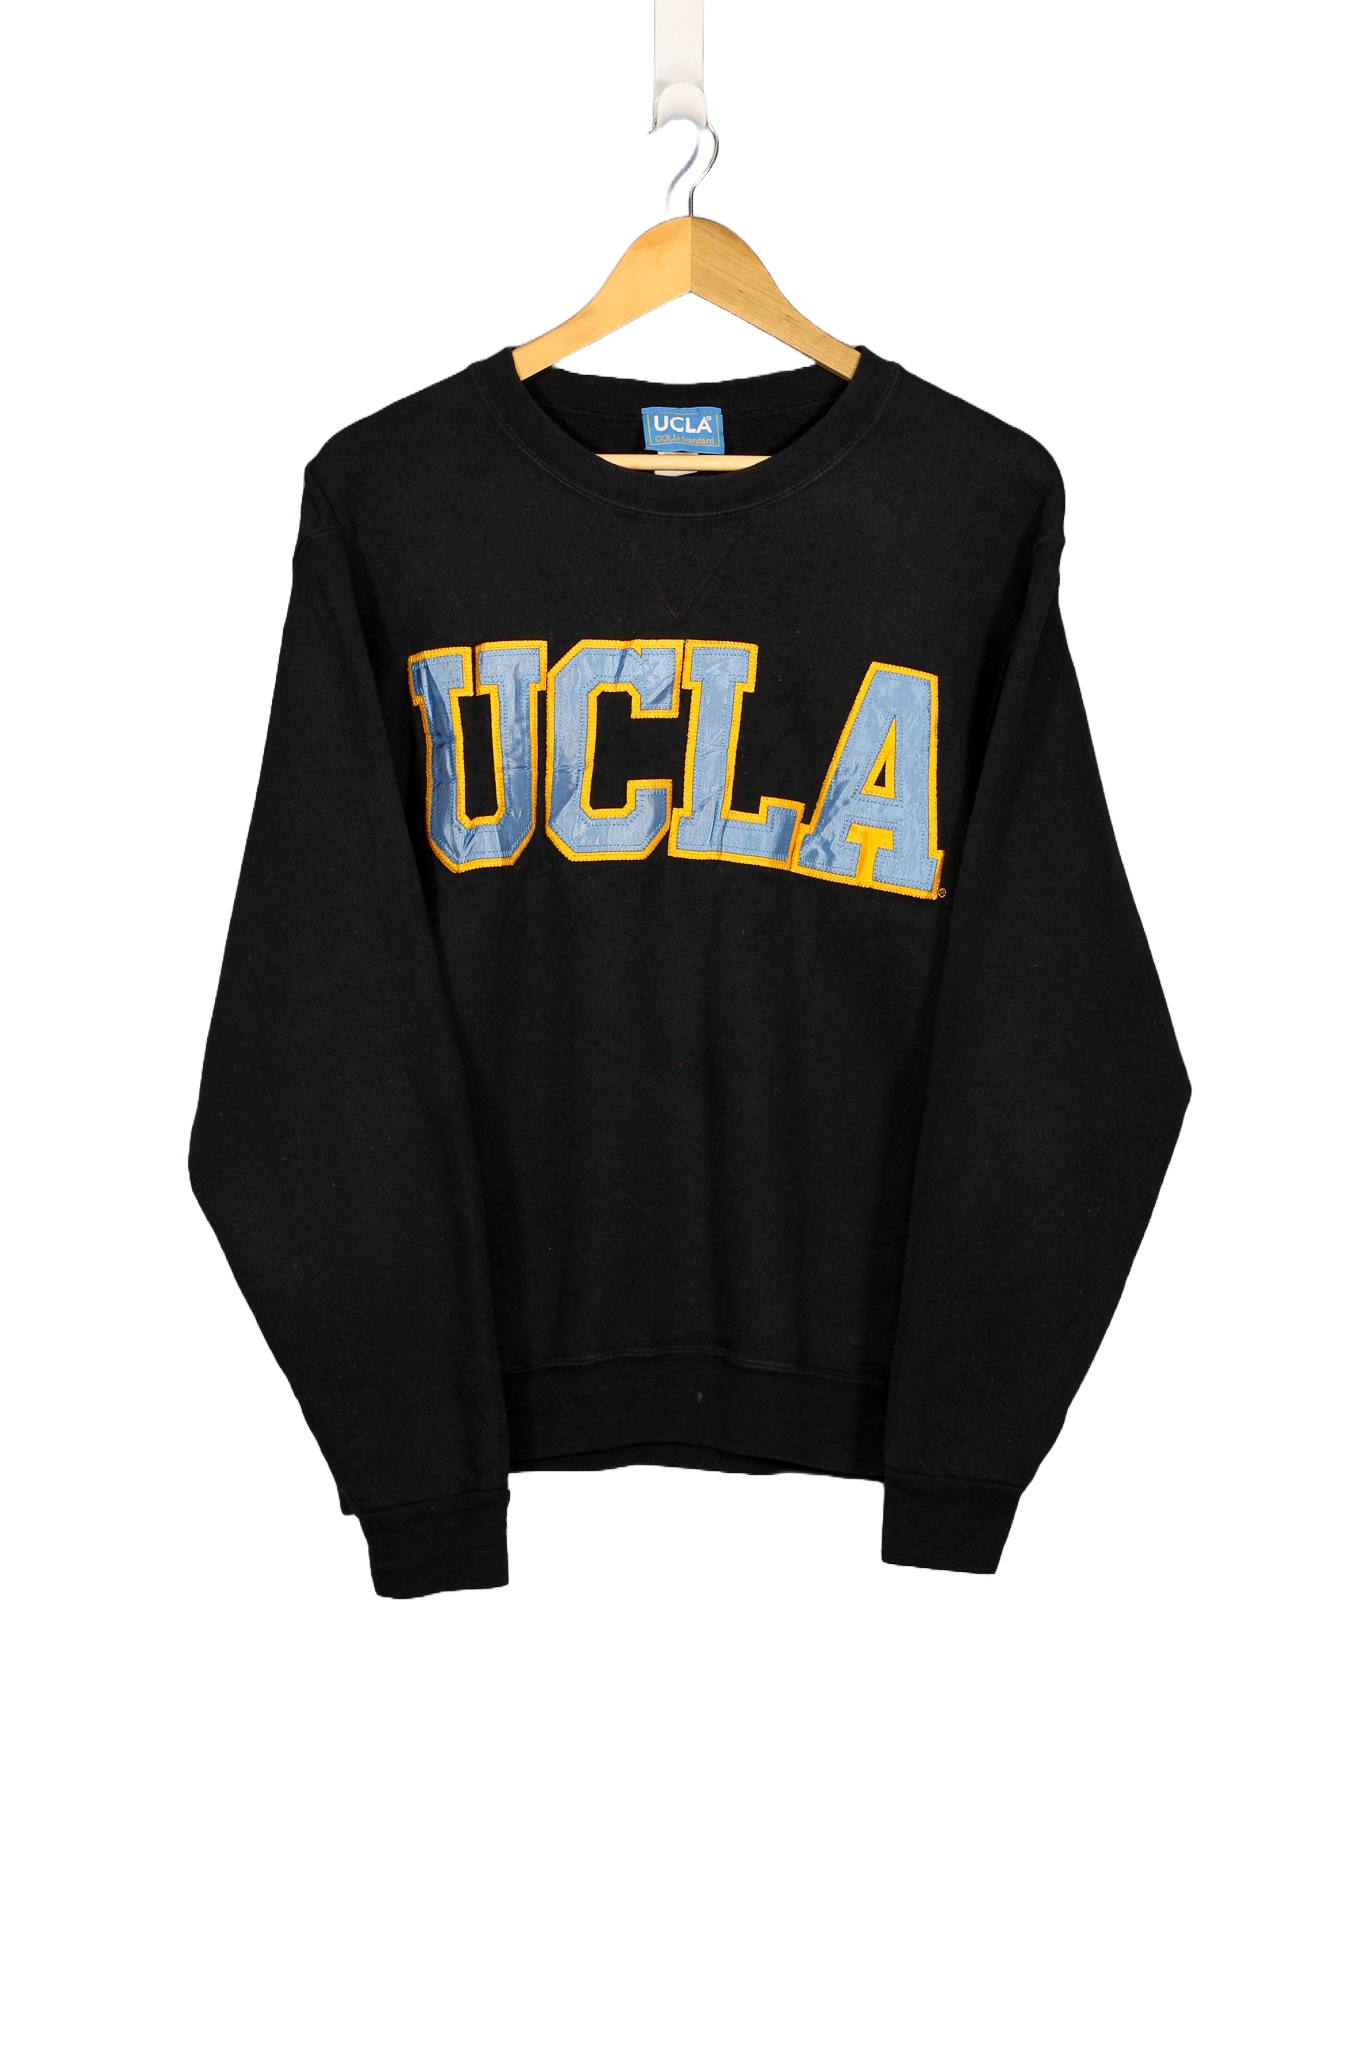 Vintage UCLA College Crewneck - M